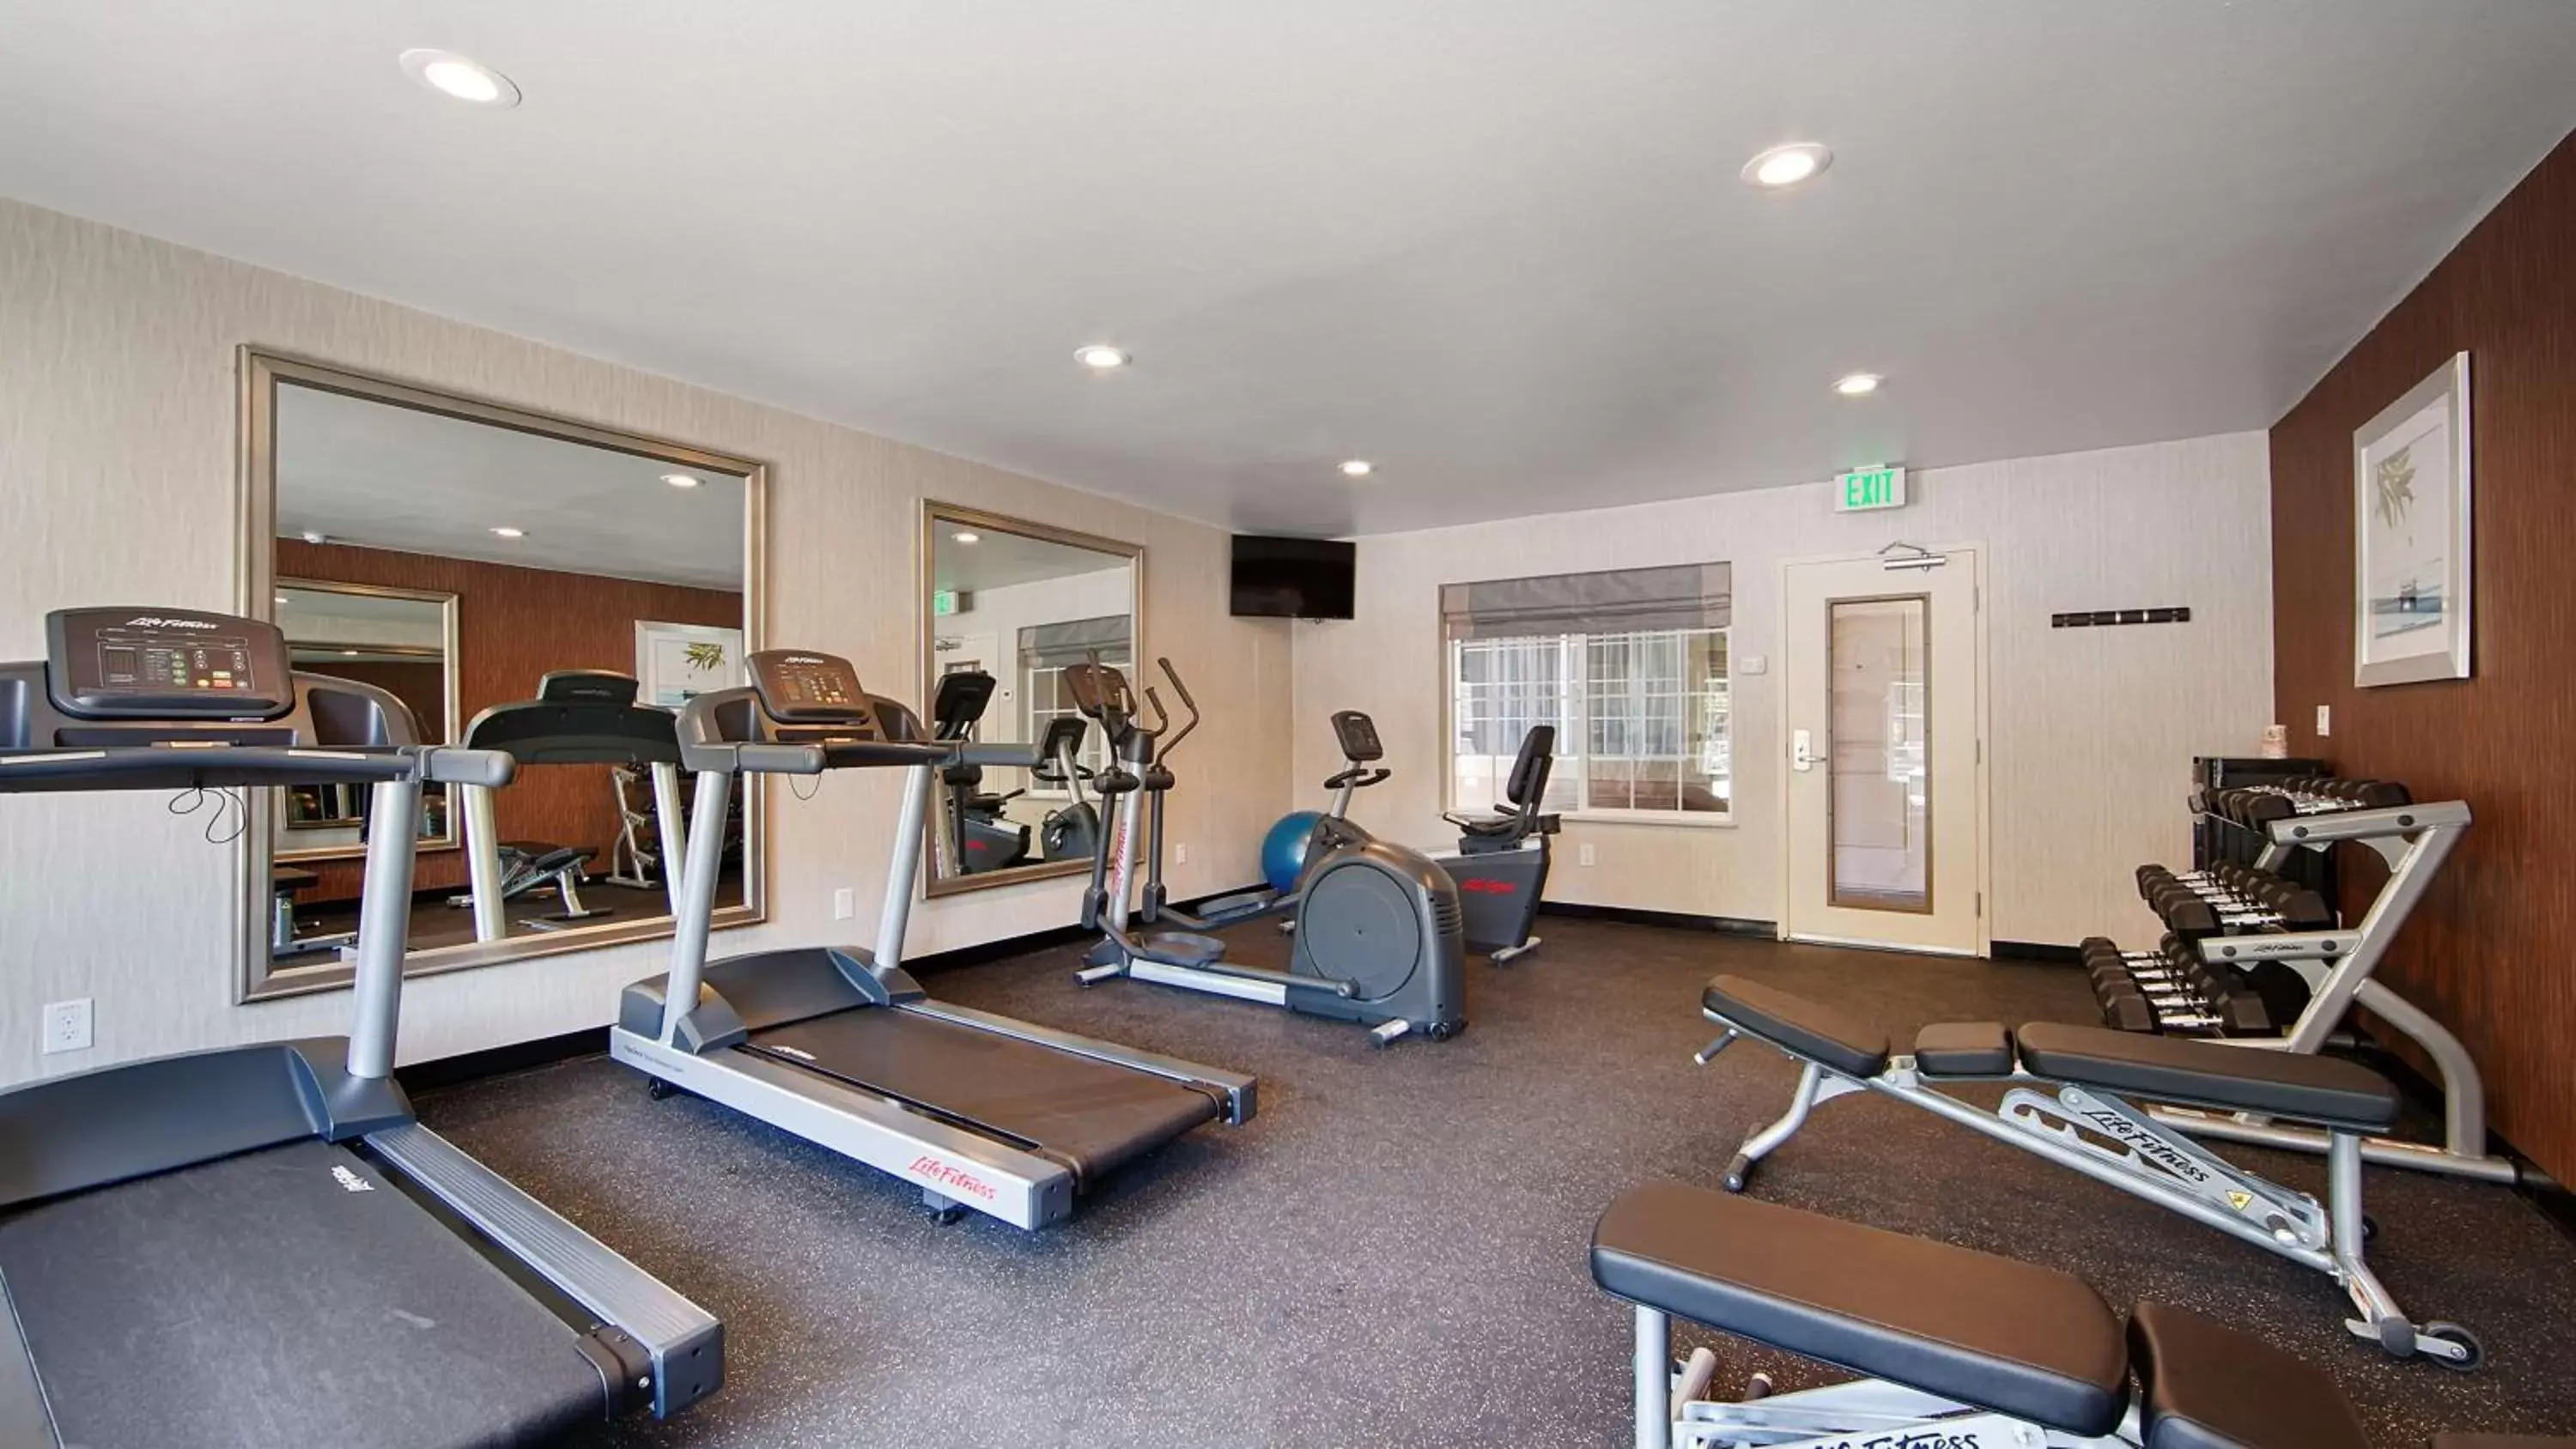 Fitness centre/facilities, Fitness Center/Facilities in Best Western University Inn Santa Clara